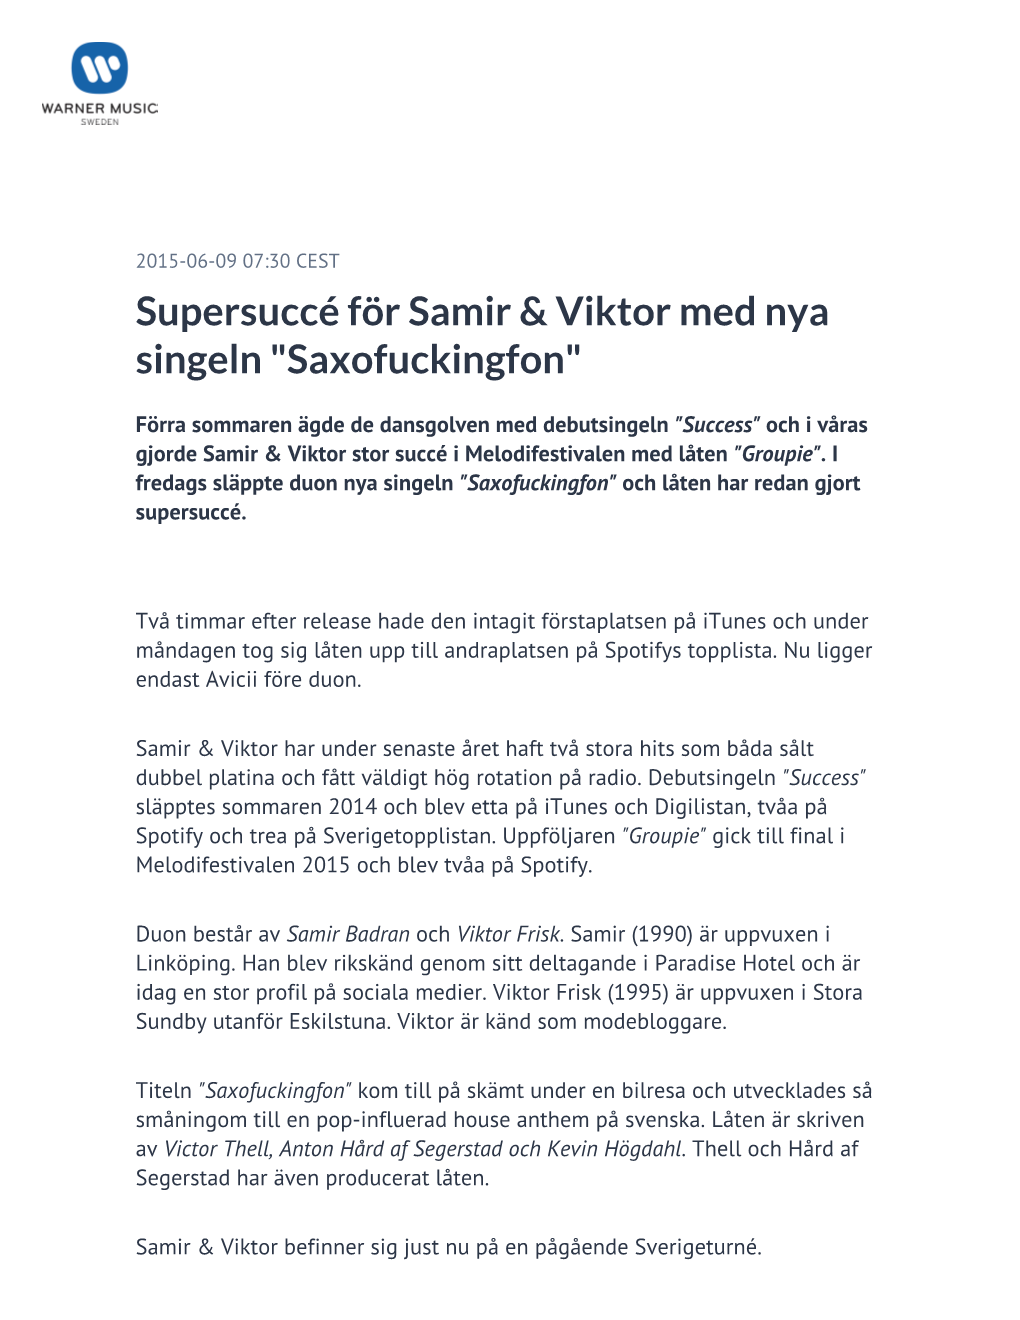 ​Supersuccé För Samir & Viktor Med Nya Singeln "Saxofuckingfon"